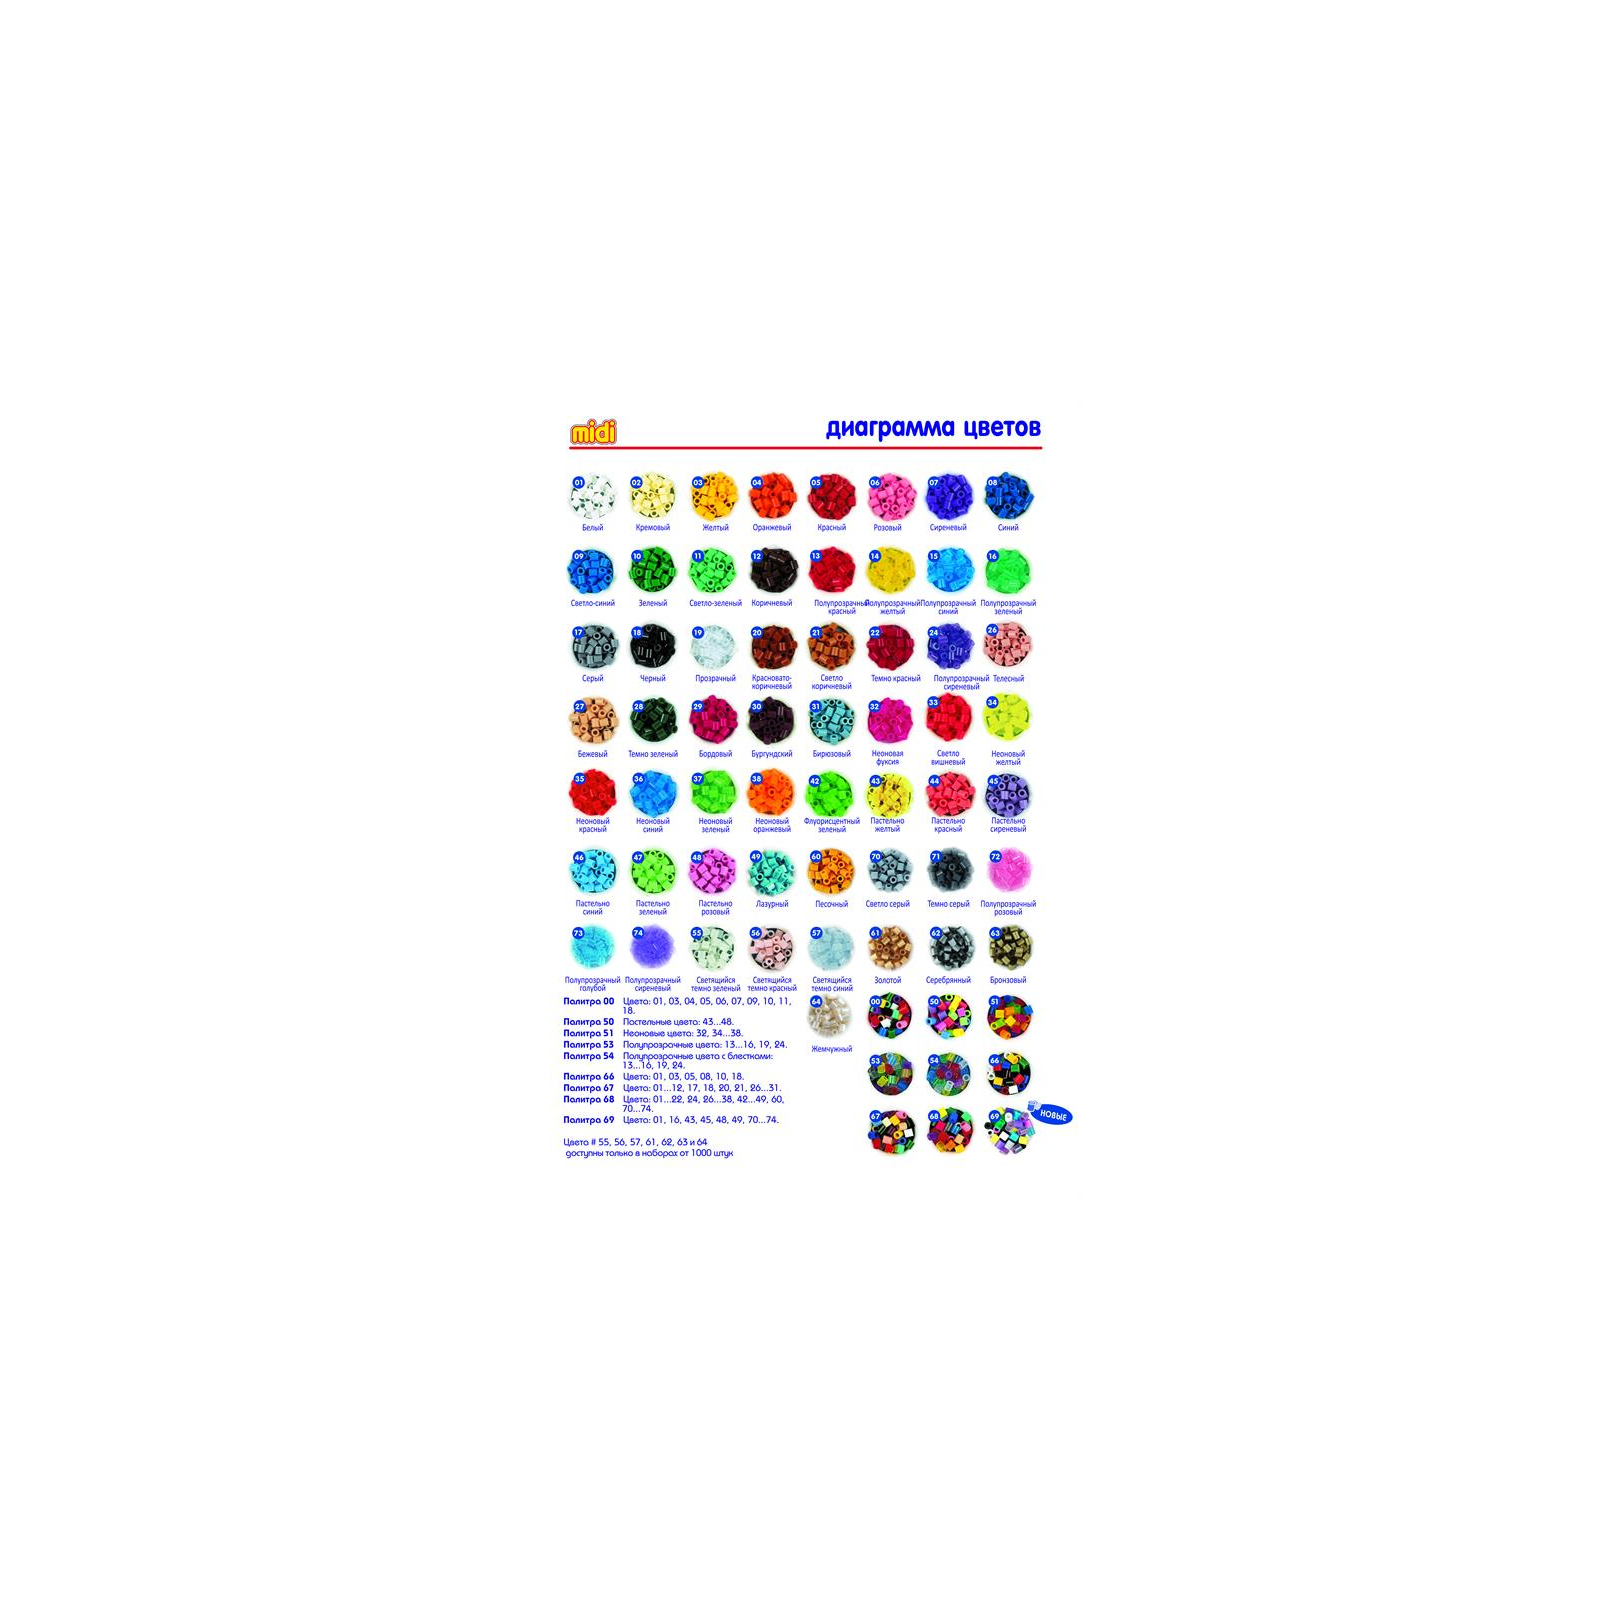 Набор для творчества Hama кольорові намистини, 10.000 шт., 10 кольорів (202-00) изображение 2